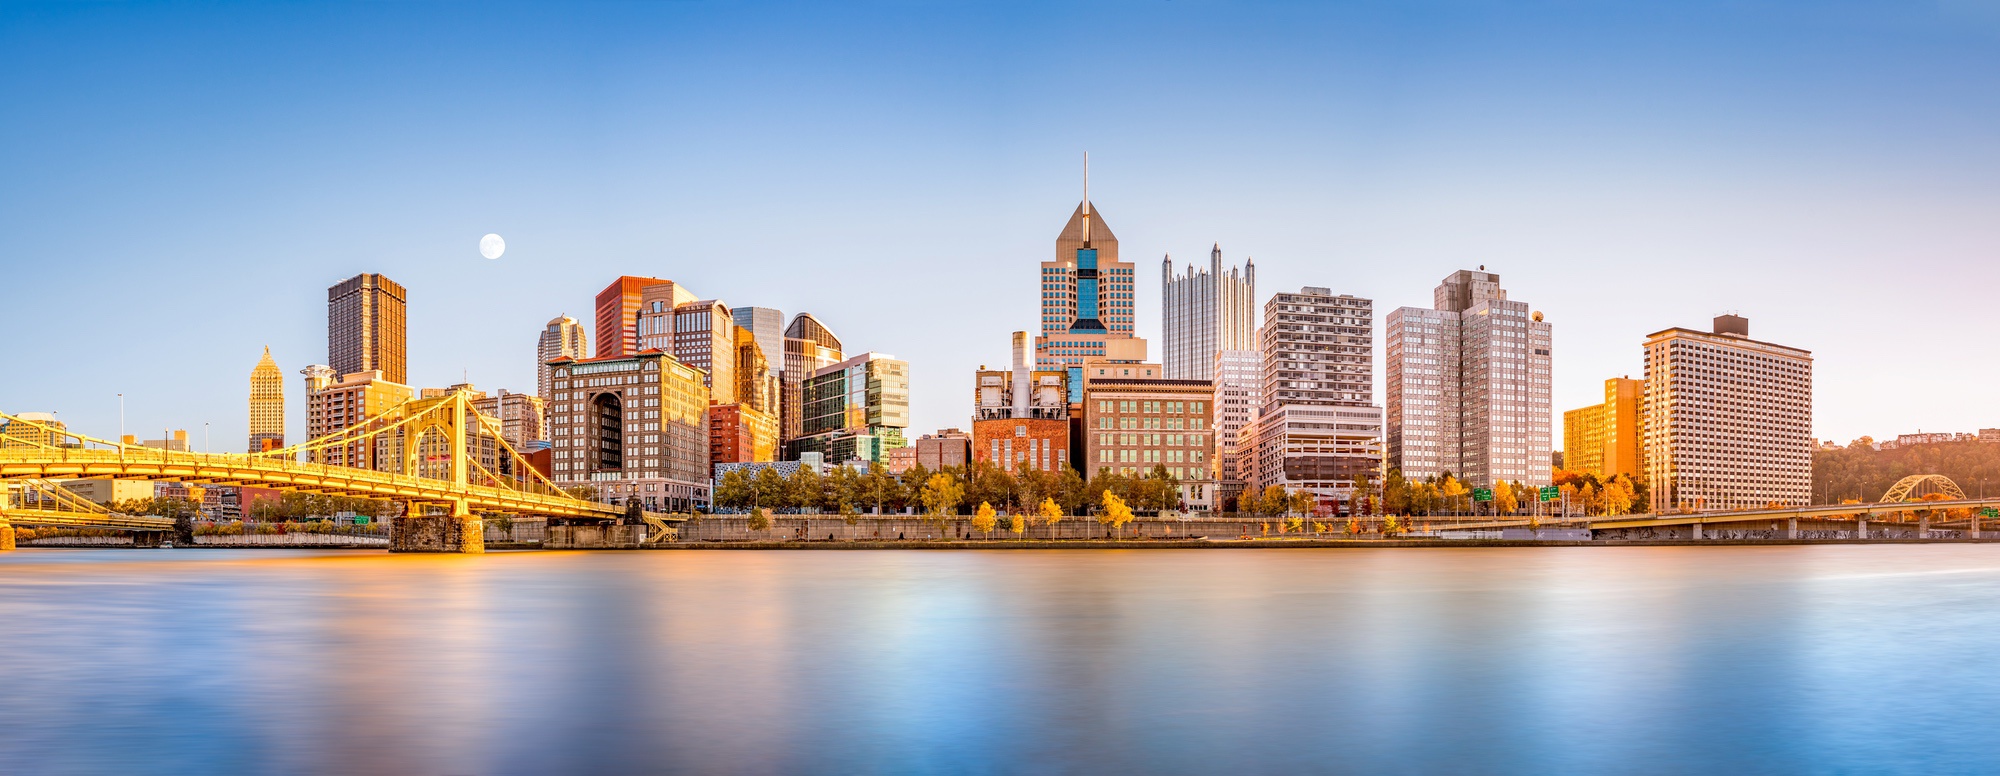 Pittsburgh Pennsylvania skyline